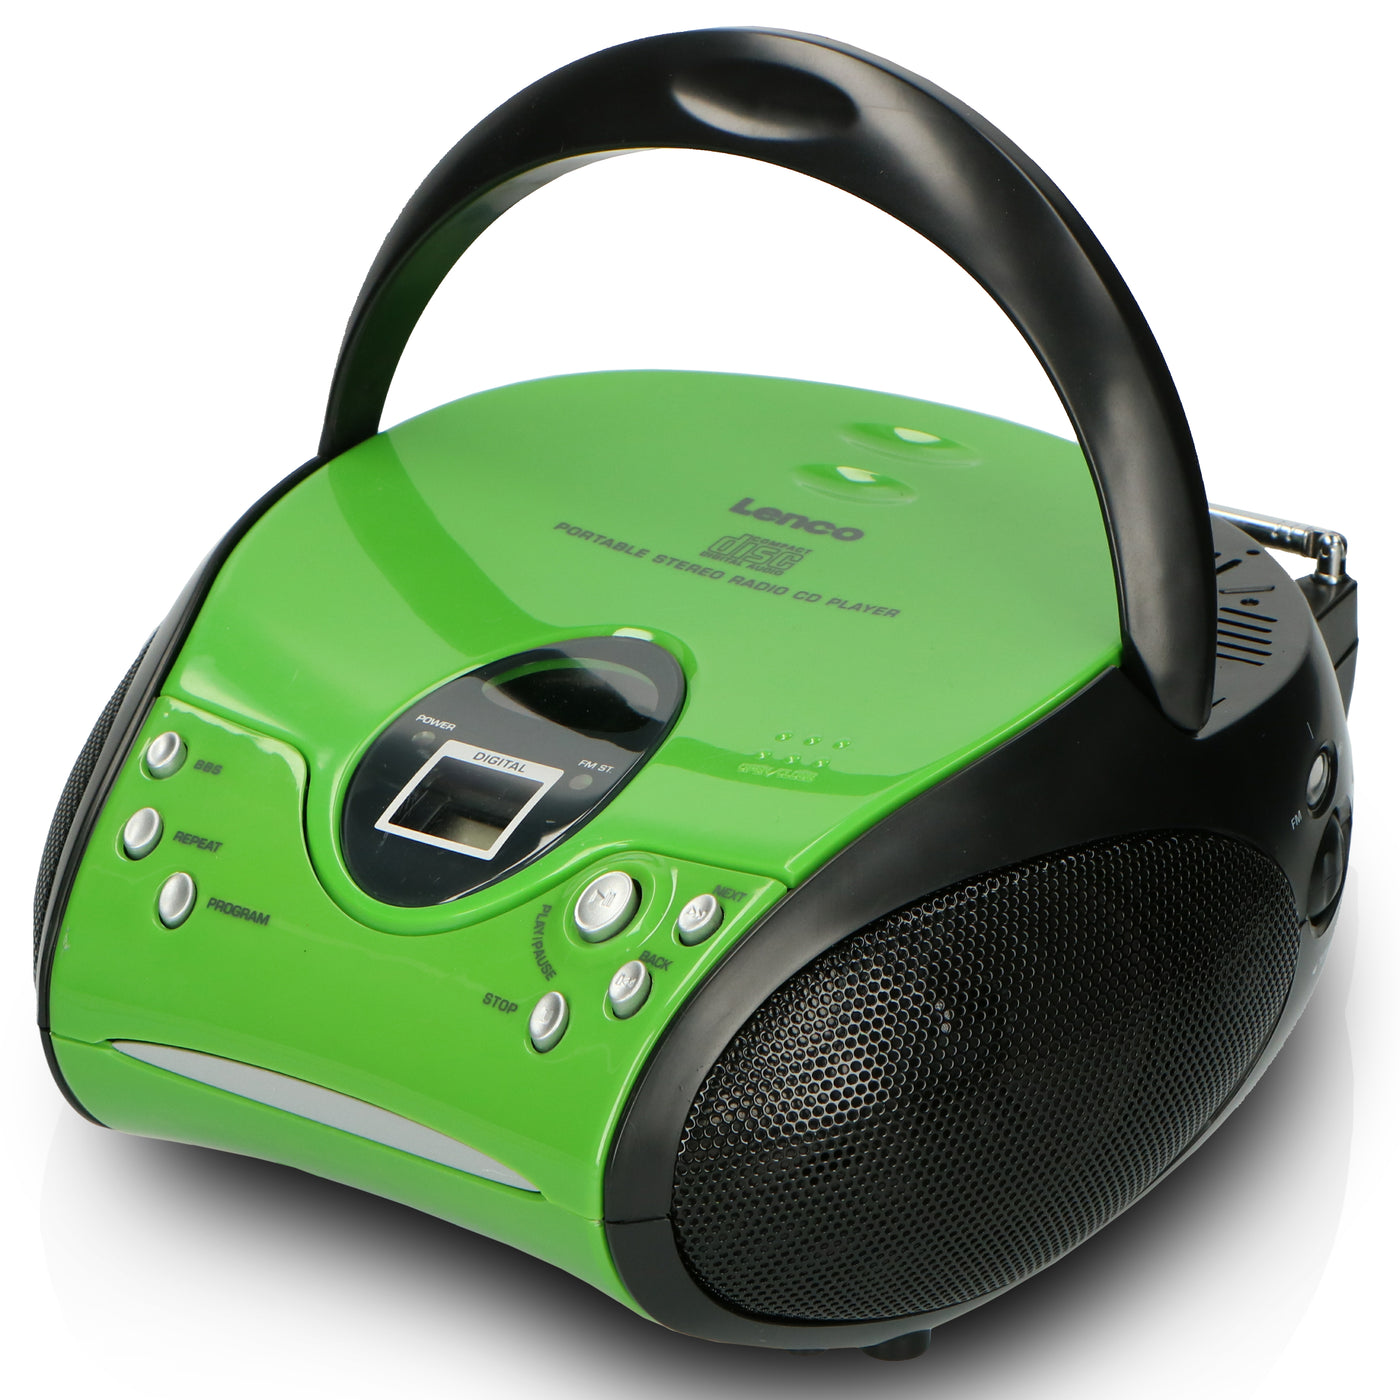 LENCO SCD-24 Green/Black - Draagbare stereo FM radio met CD-speler - Groen/zwart